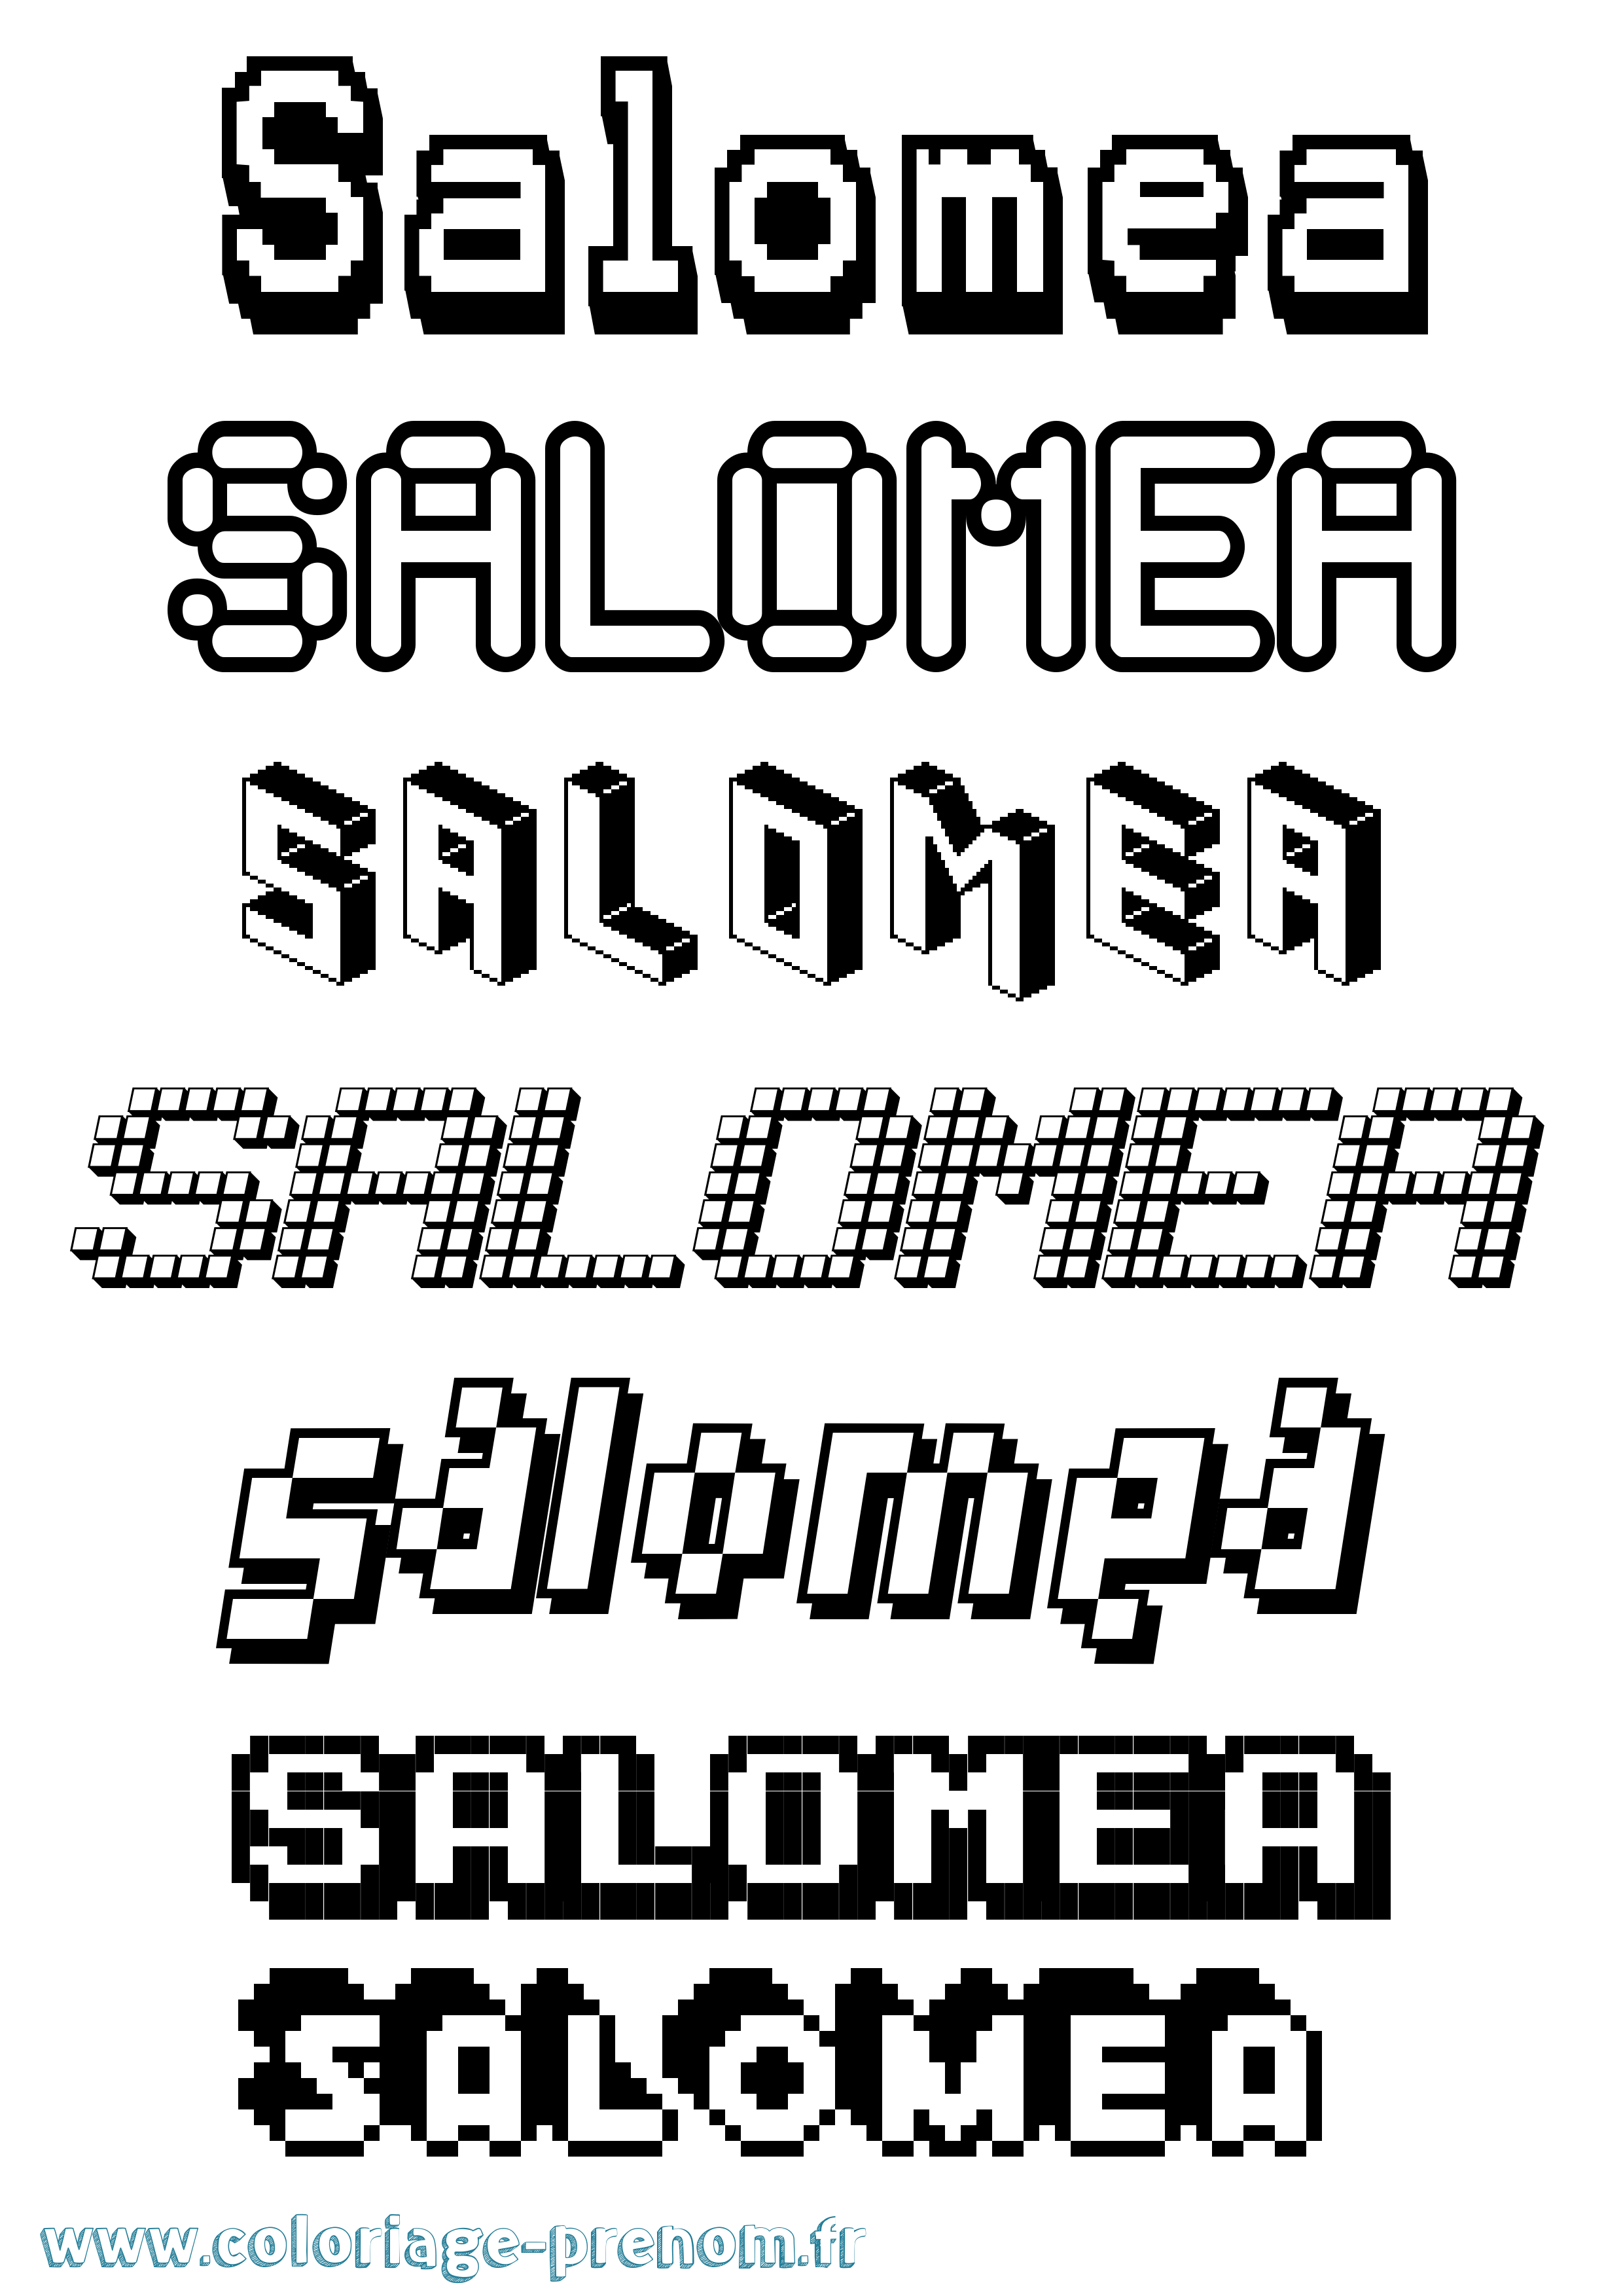 Coloriage prénom Salomea Pixel